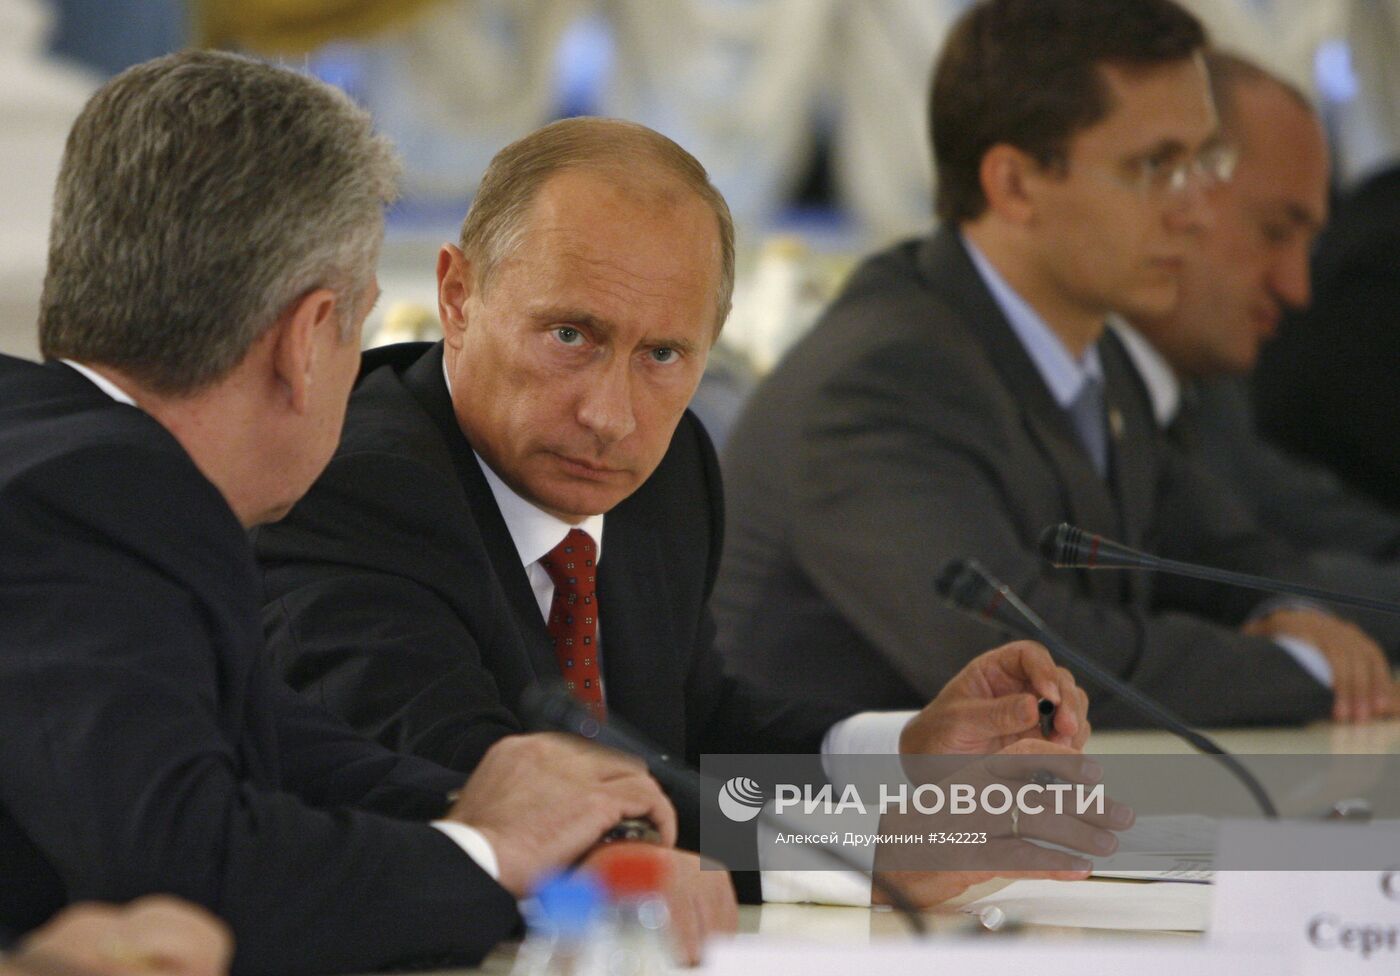 Премьер-министр В.Путин провел ряд встреч в Доме приемов